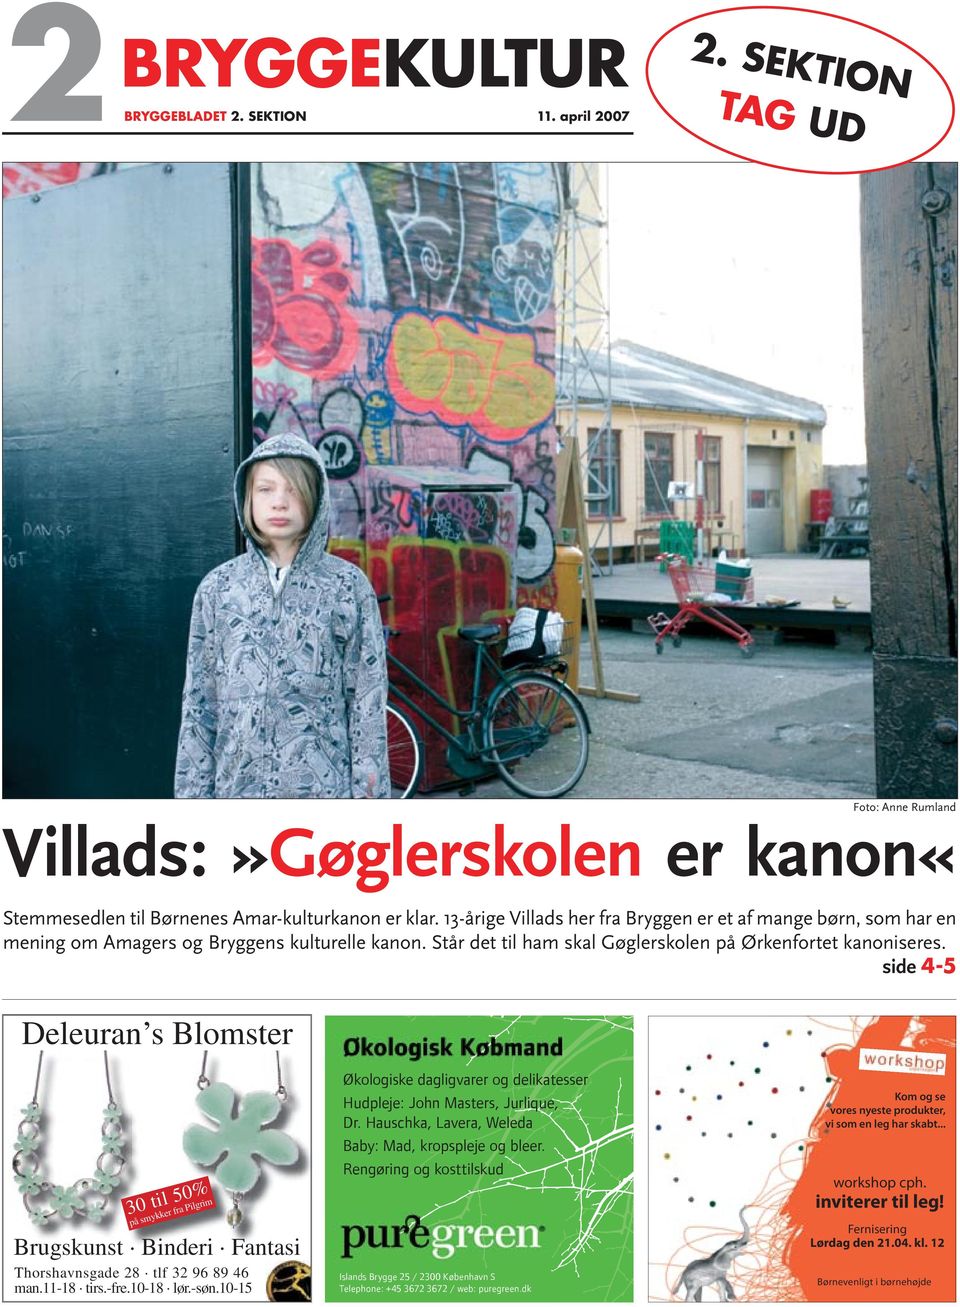 Converge aftale Penelope Foto: Anne Rumland Villads:»Gøglerskolen er kanon« - PDF Gratis download